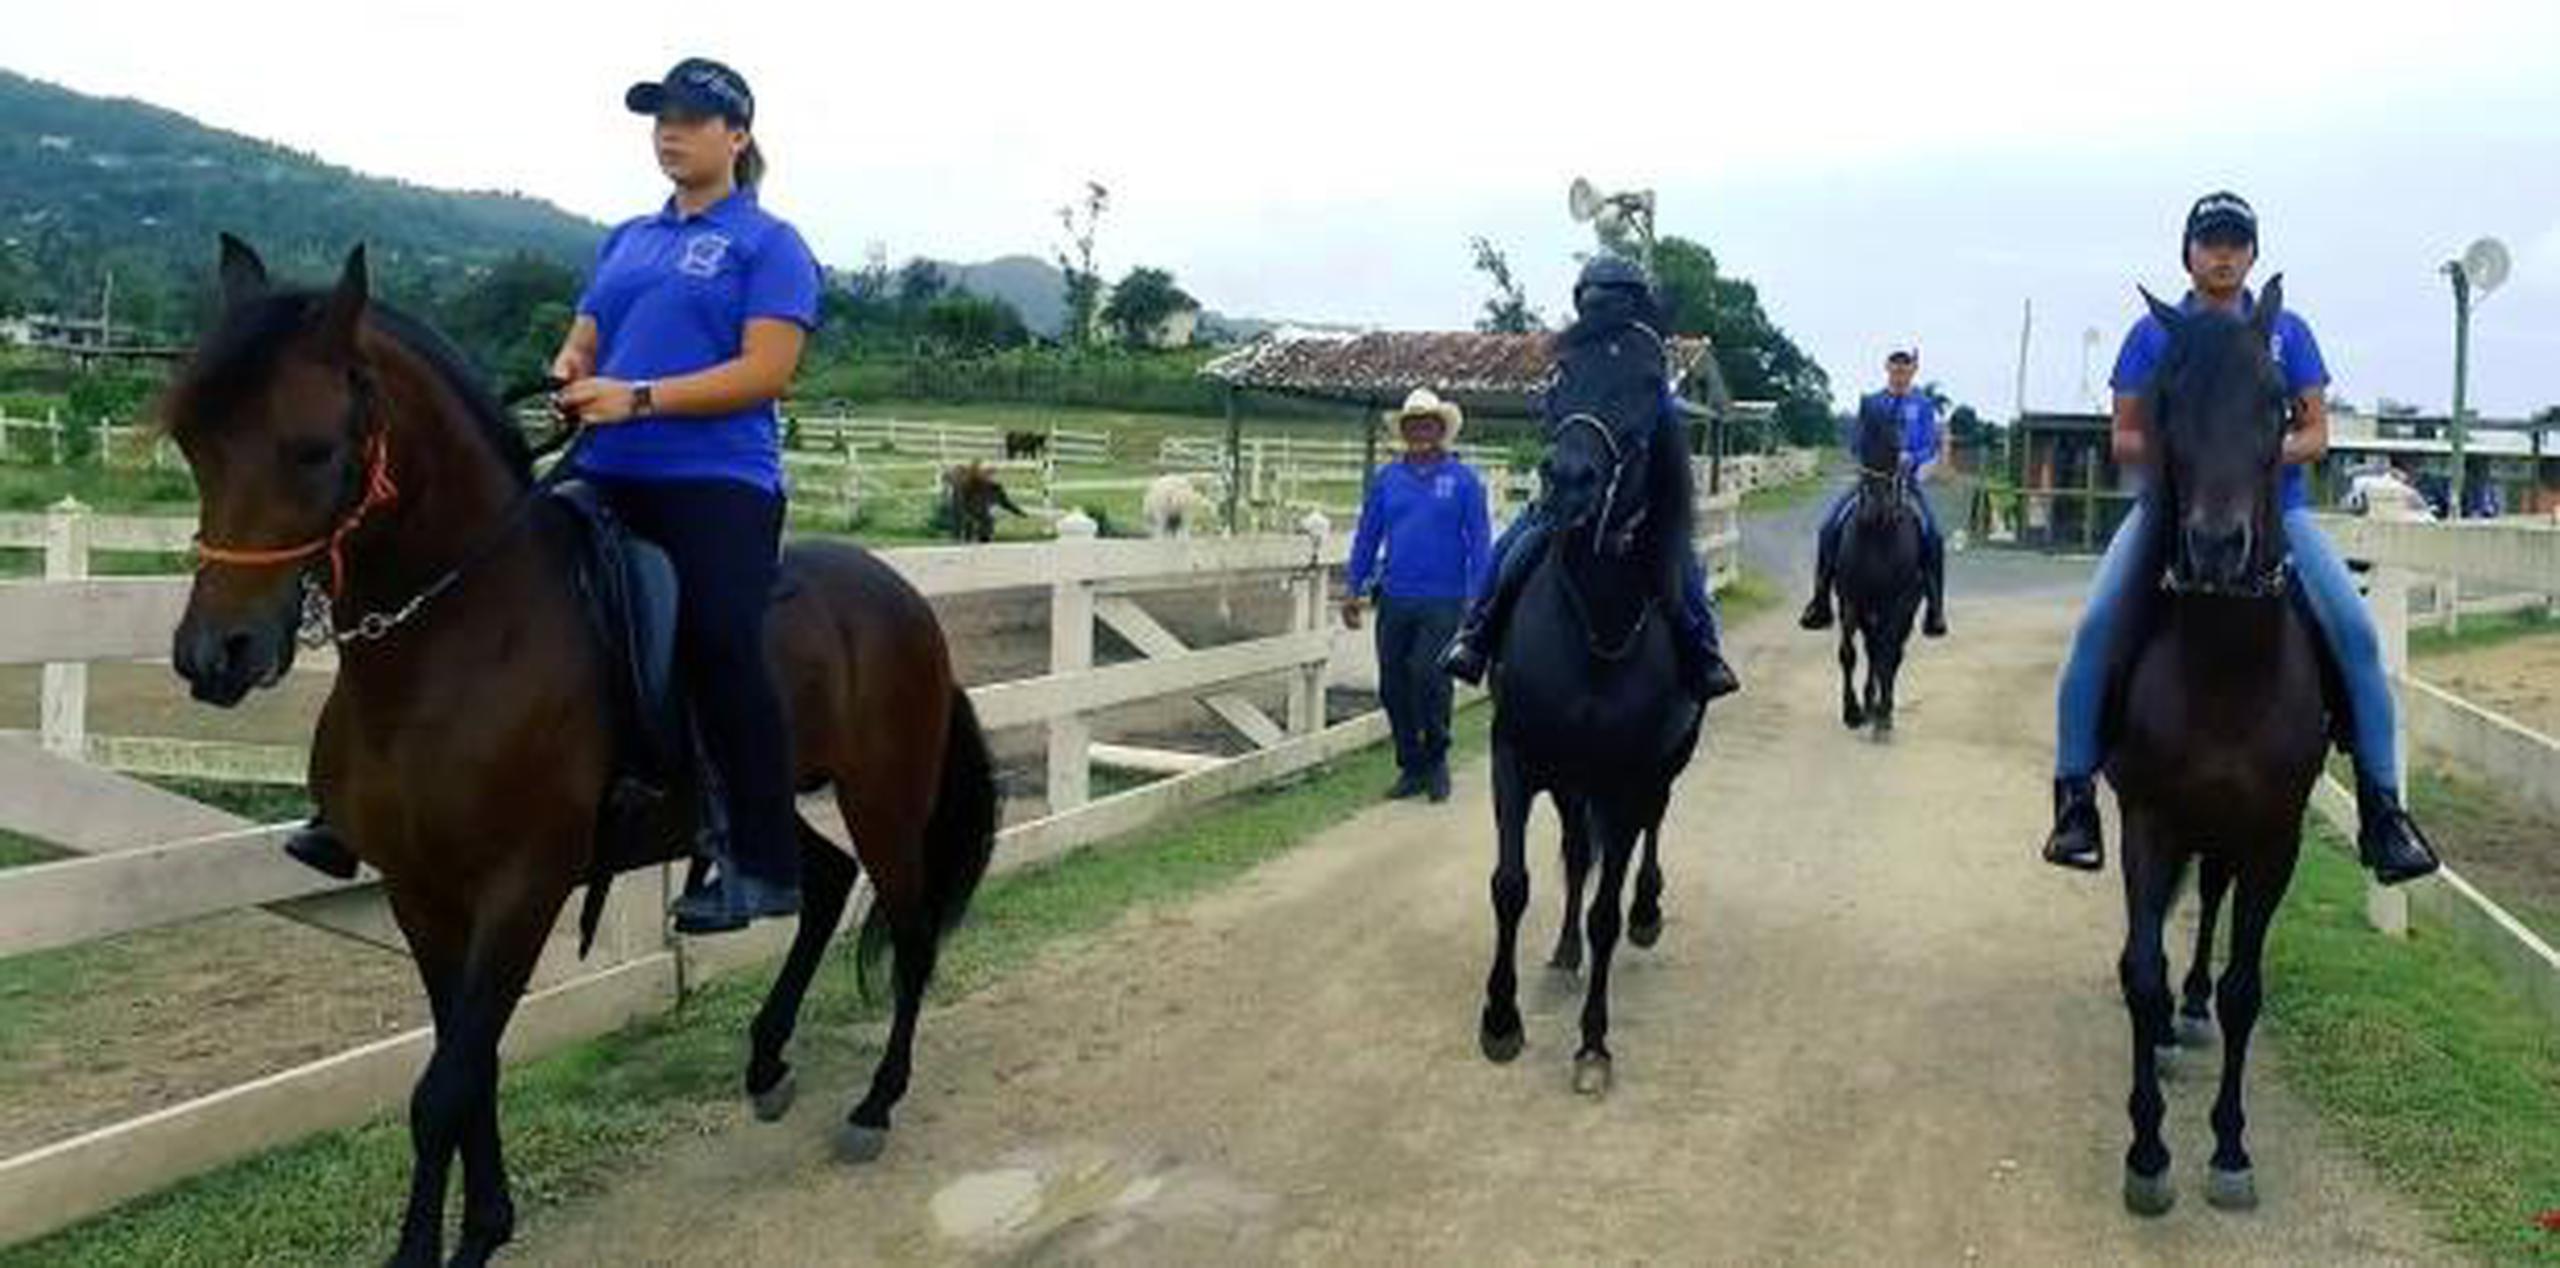 En equitación se espera la participación de unos 90 jinetes y amazonas durante los dos días de competición.  (Suministrada)